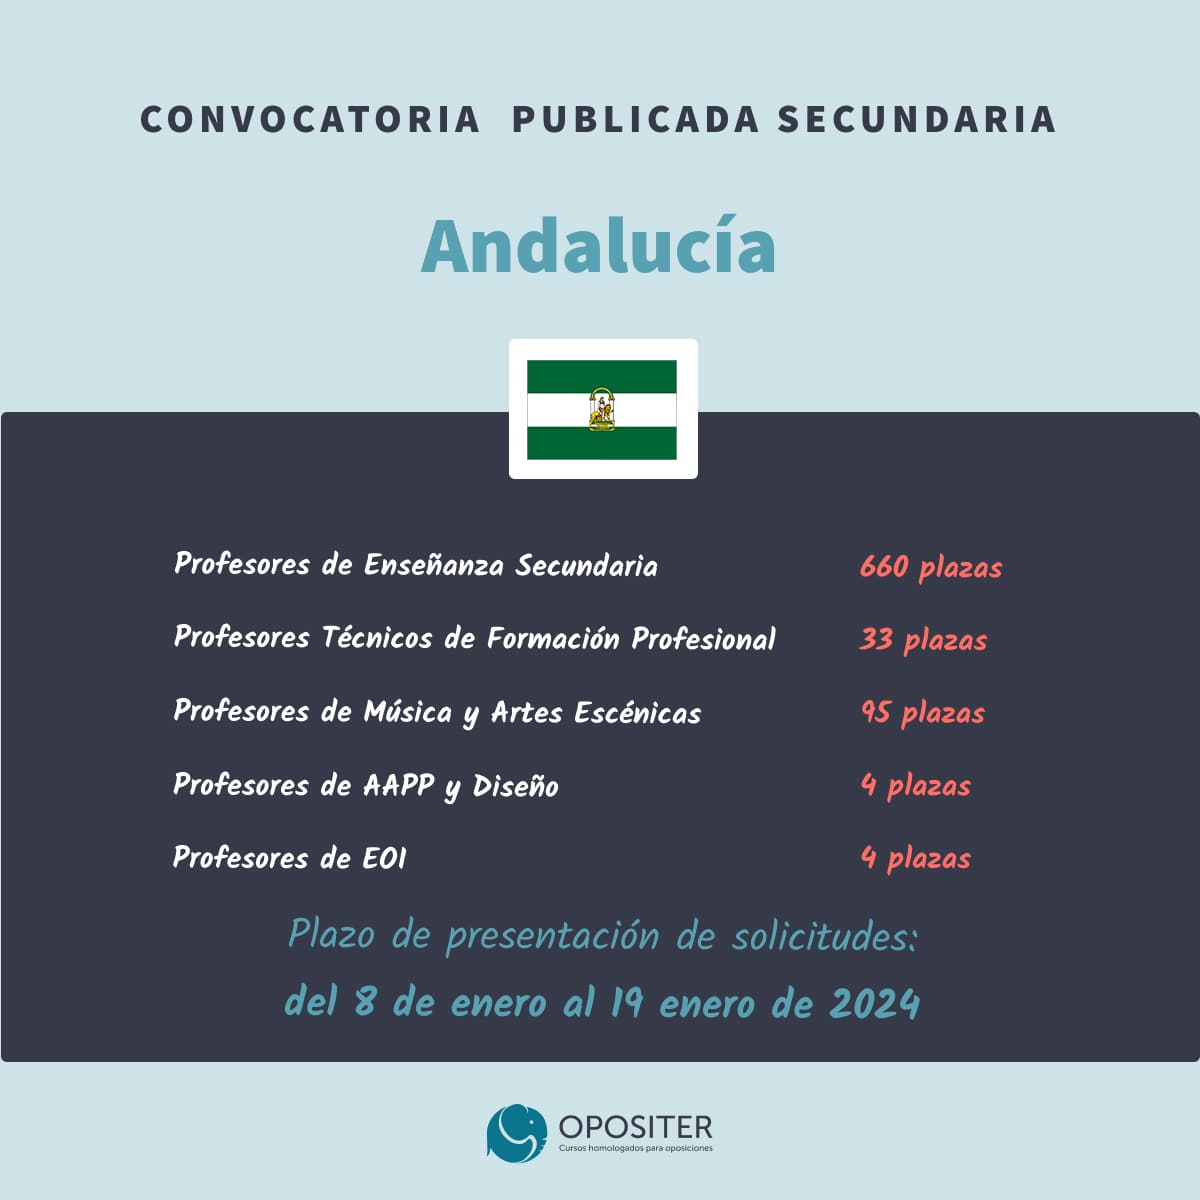 Convocatoria oposiciones secundaria andalucia